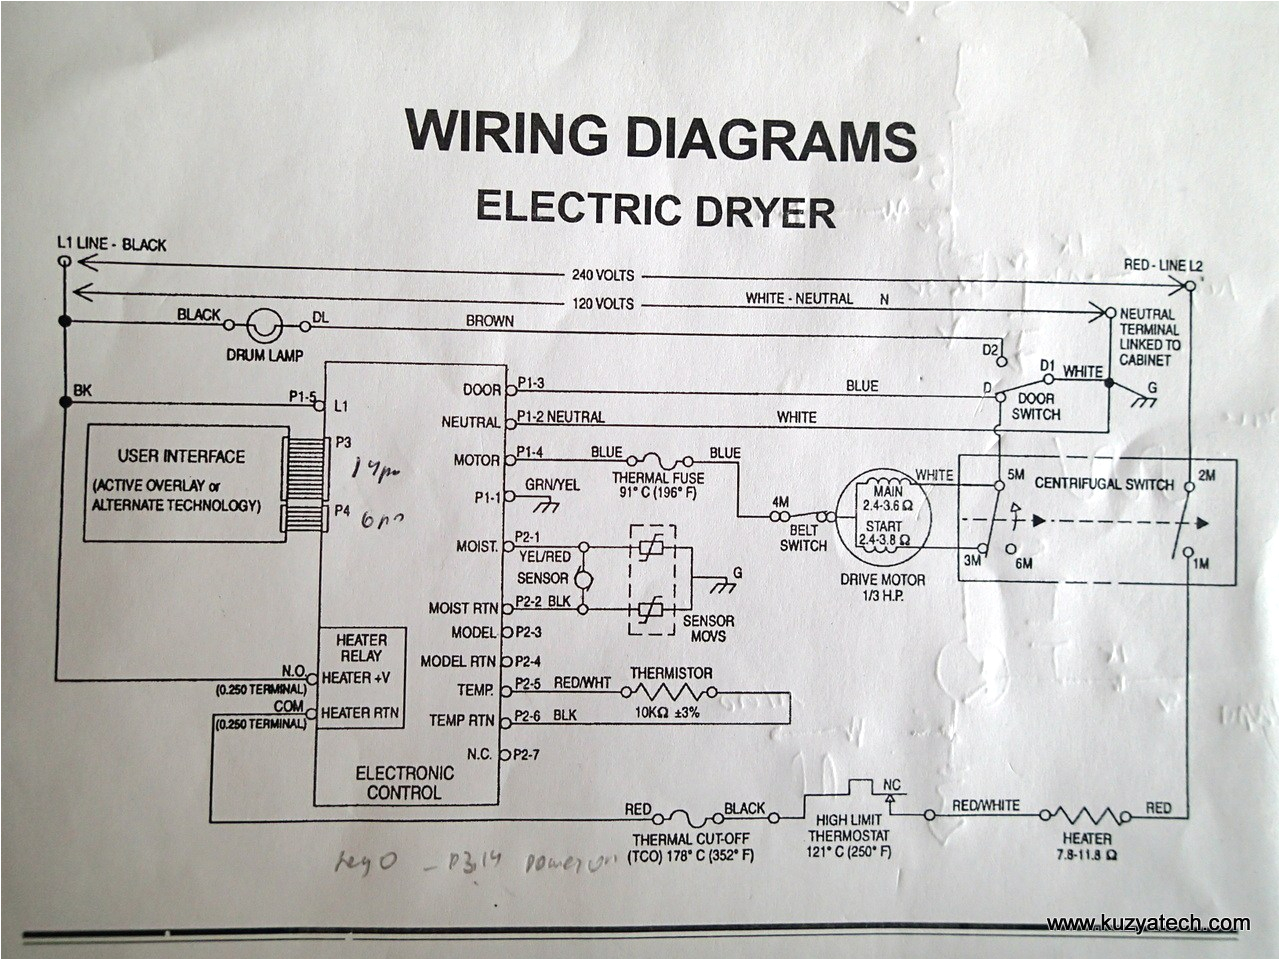 maytag duet dryer wiring diagram wiring diagram toolboxwhirlpool dryer wiring diagram wiring diagram toolbox whirlpool duet dryer heating element wiring